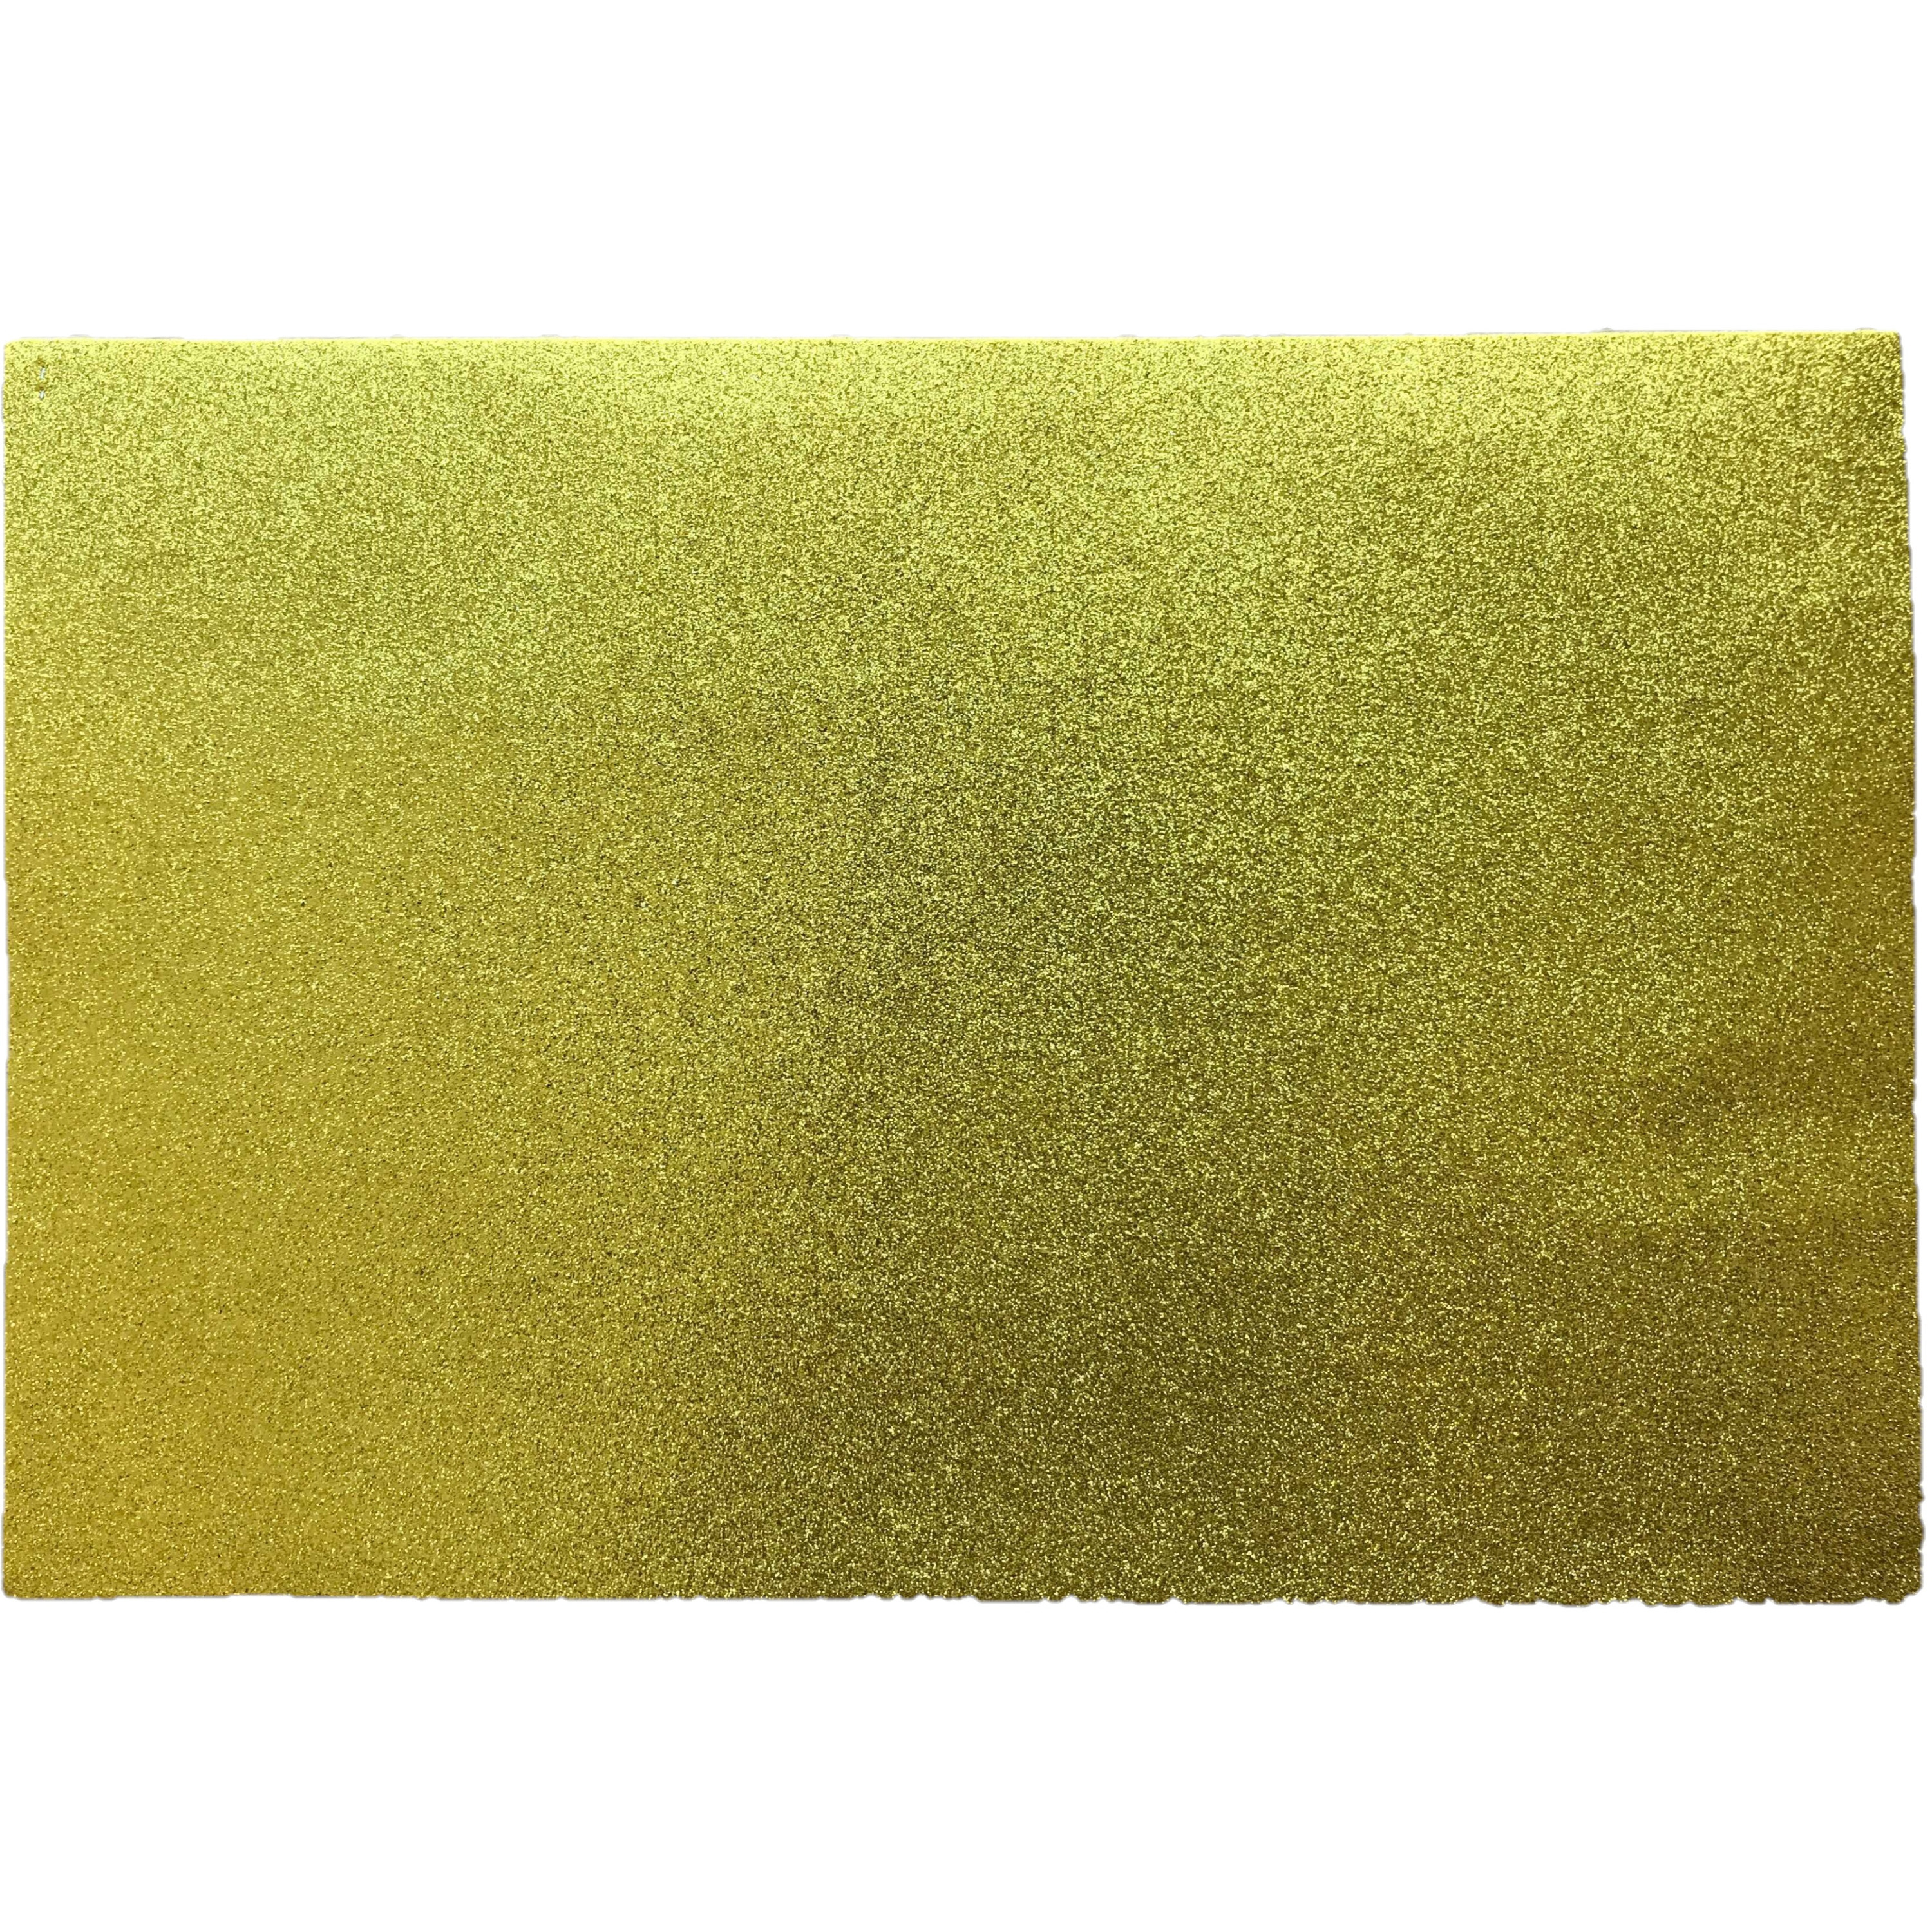 Crepla knutsel foam rubber goud met glitters 30 x 45 cm